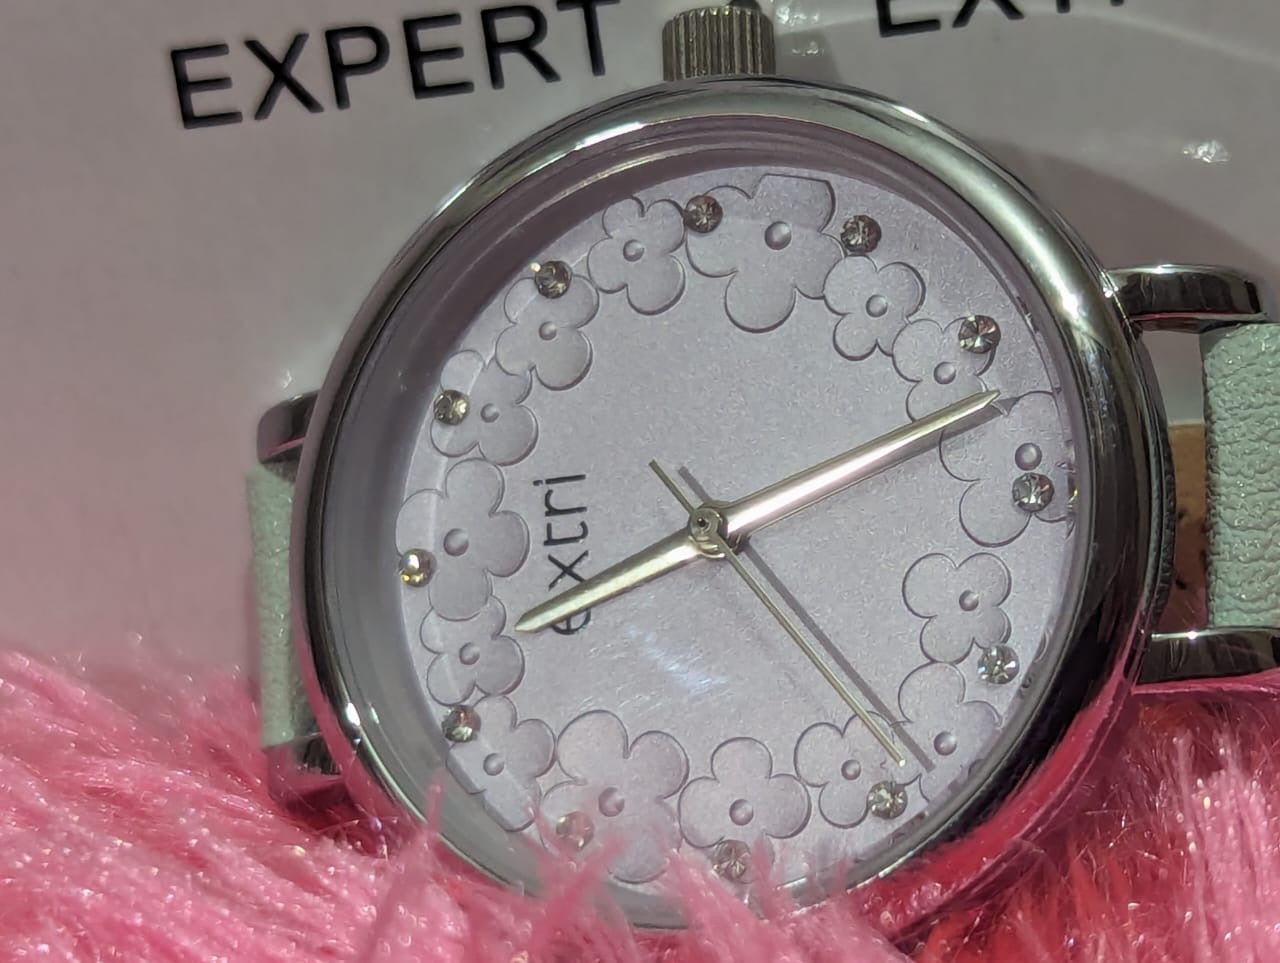 eXtri Classic Analog Wristwatch